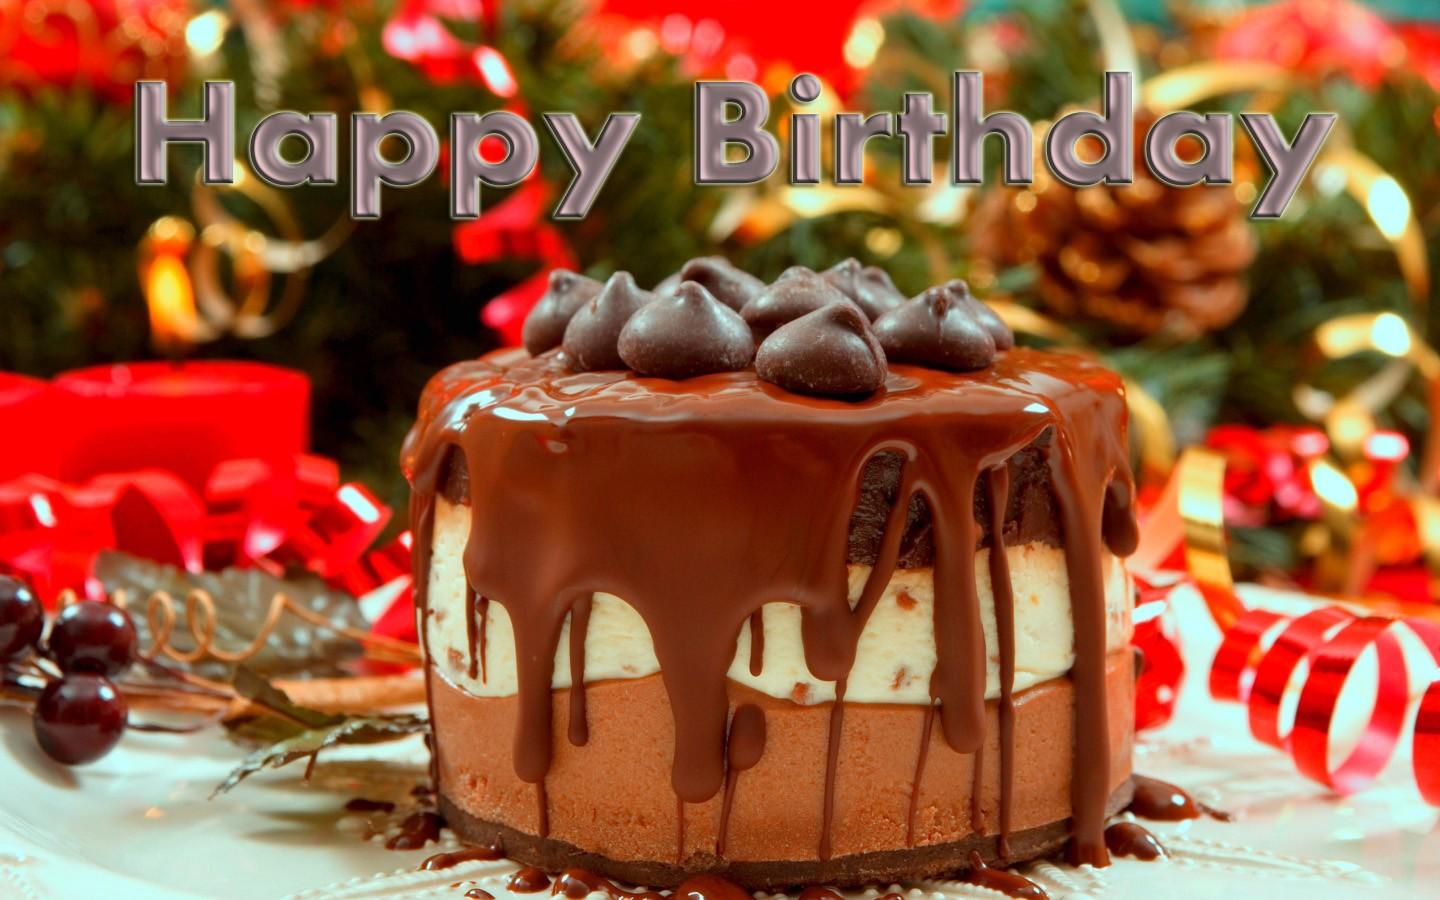 Happy Birthday Wish With Chocolate Cake